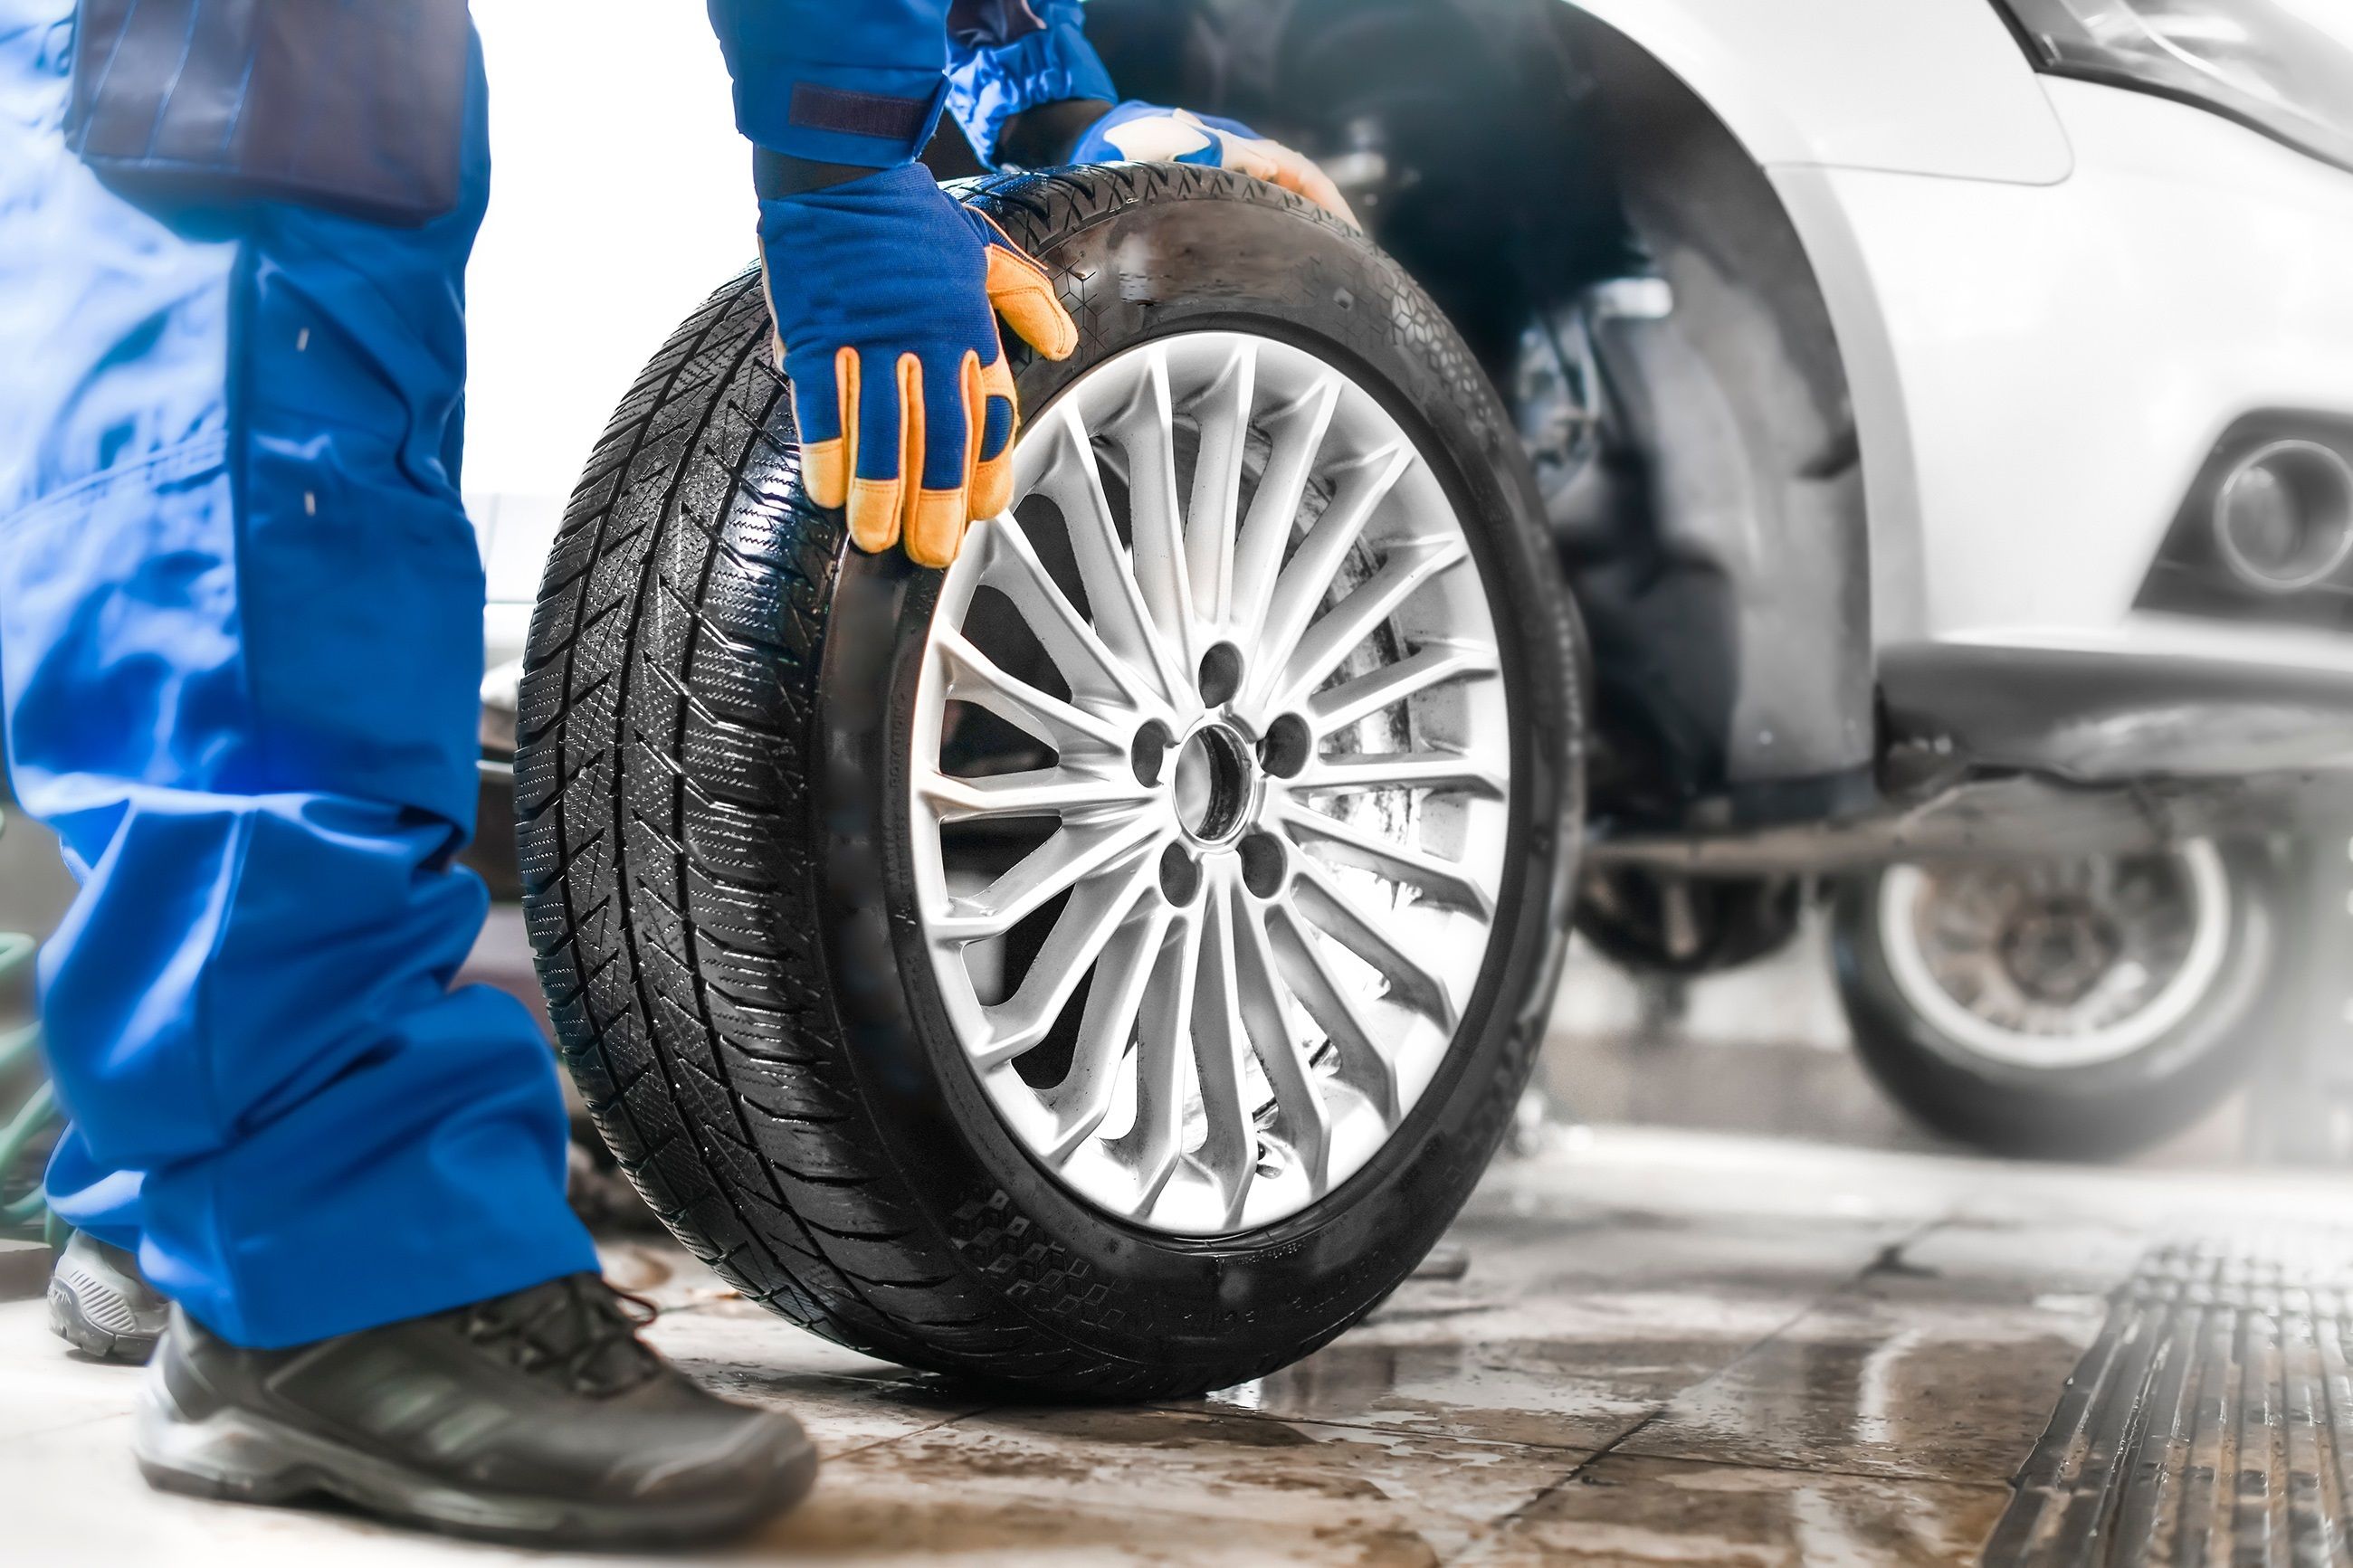 La OCU encuentra una diferencia de más de 40.000 km de rodadura entre los neumáticos analizados